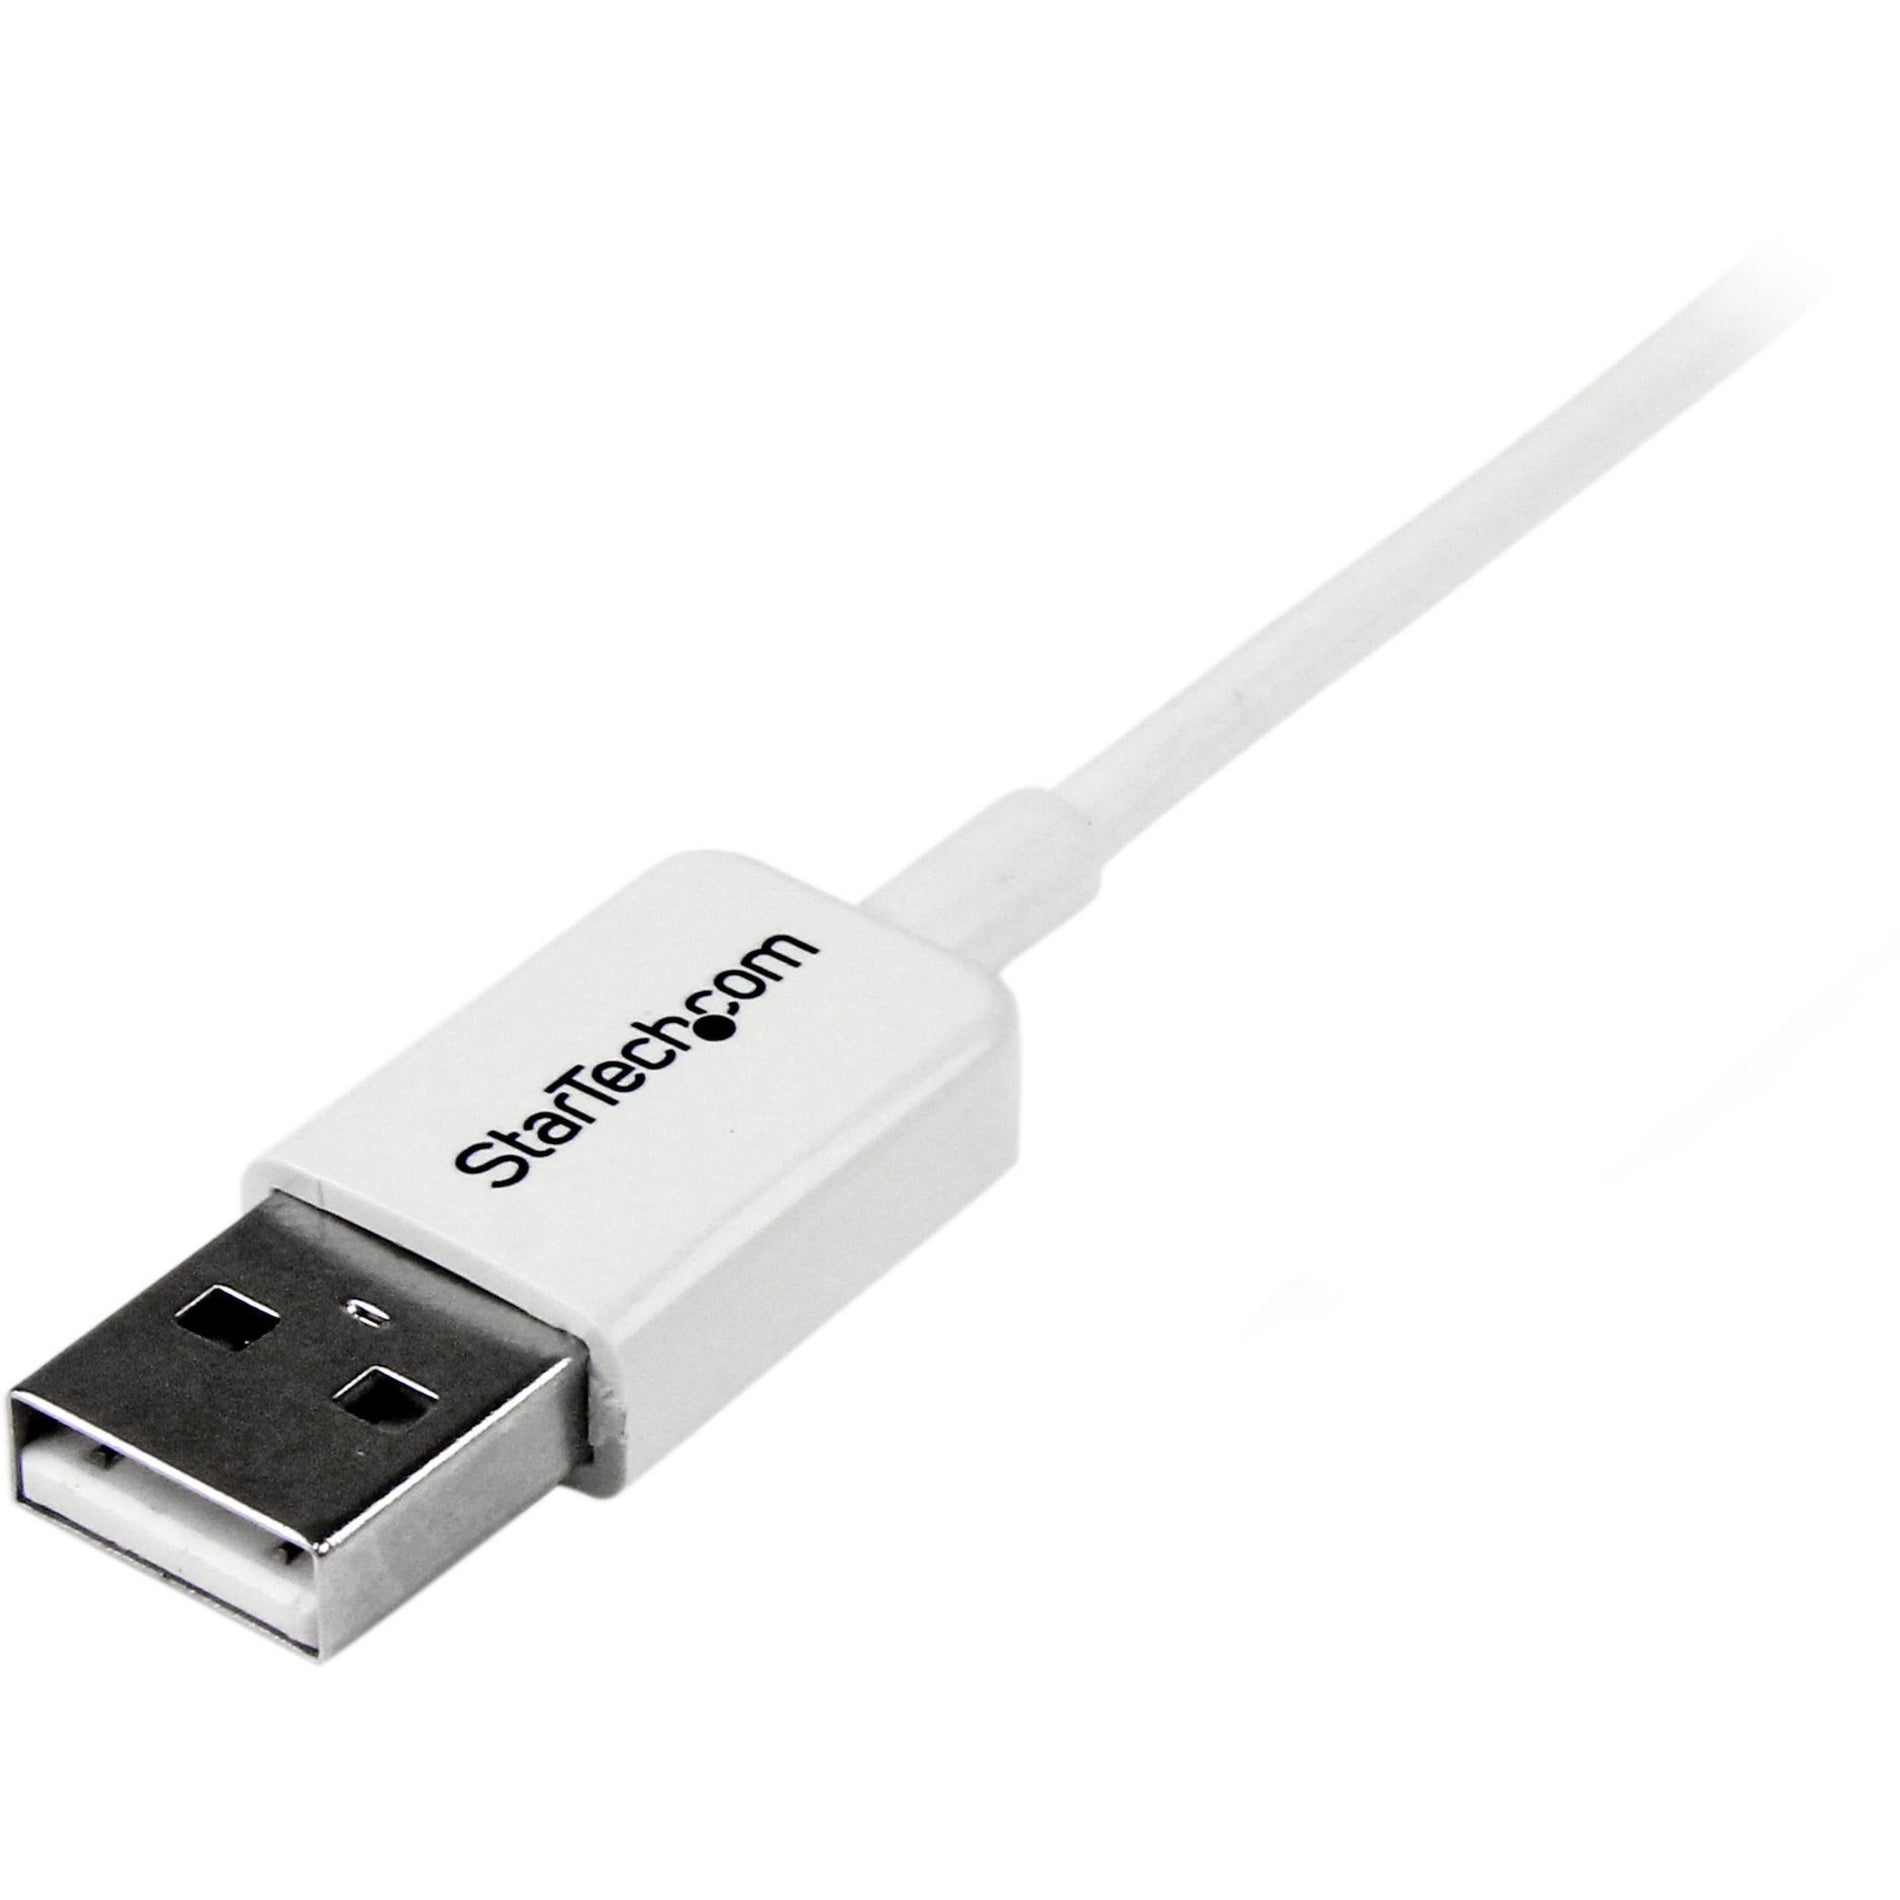 StarTech.com Cavo USBPAUB50CMW 0.5m Bianco Micro USB - A a Micro B Stampato Rilievo per Sforzo Velocità di Trasferimento Dati di 480 Mbit/s